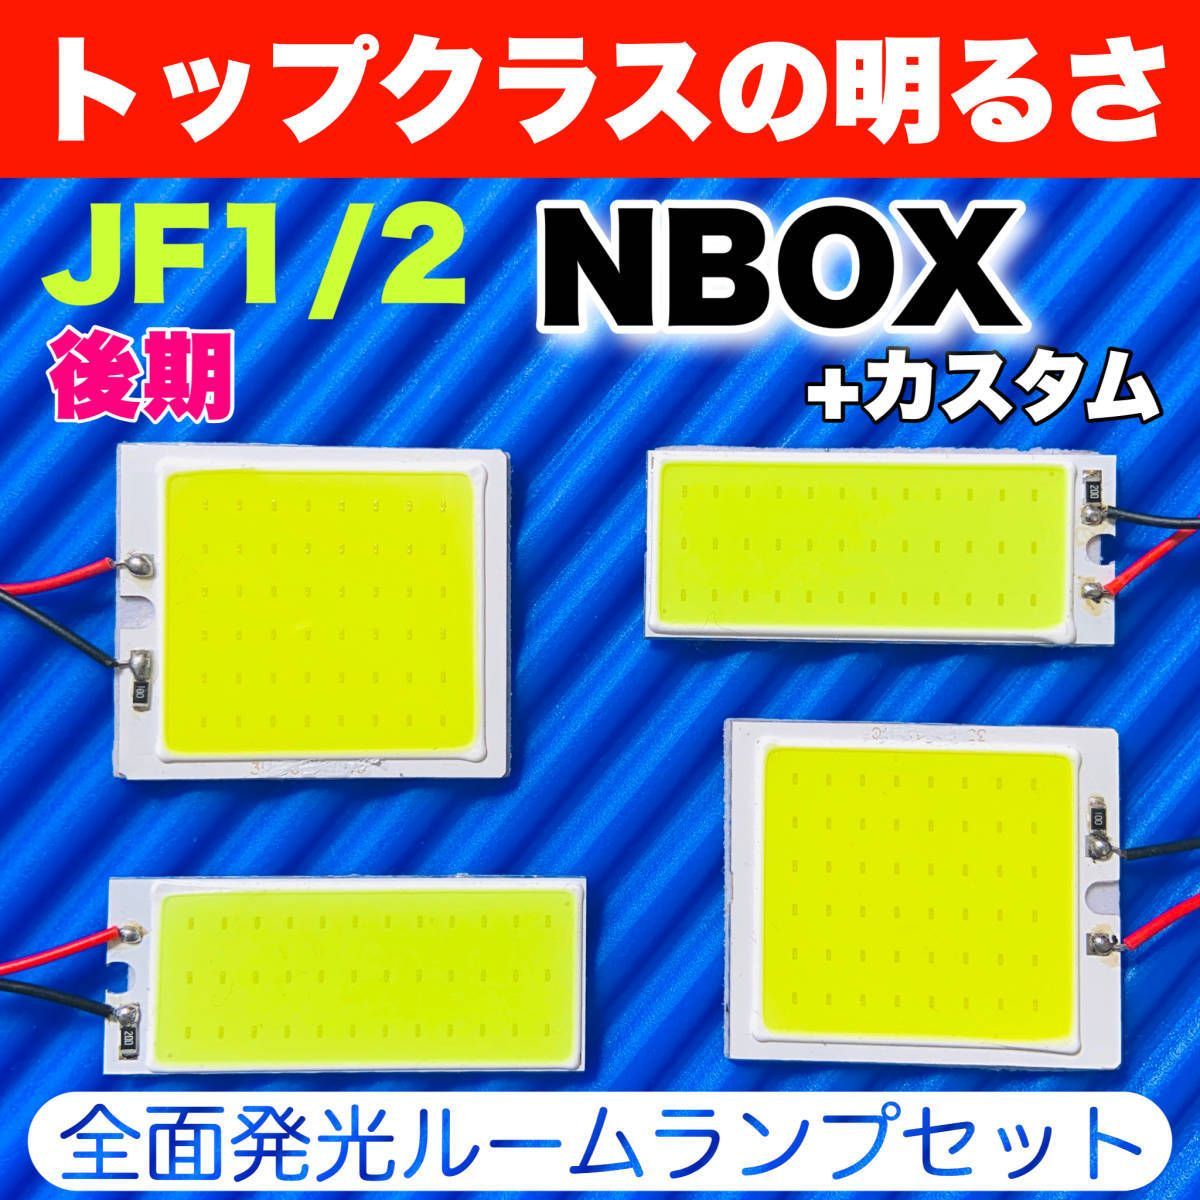 JF1/2 NBOX+カスタム 後期(N-BOX) 適合 COB全面発光 LED基盤 T10 LED ルームランプセット 室内灯 読書灯 超爆光  ホワイト ホンダ パーツ - メルカリ